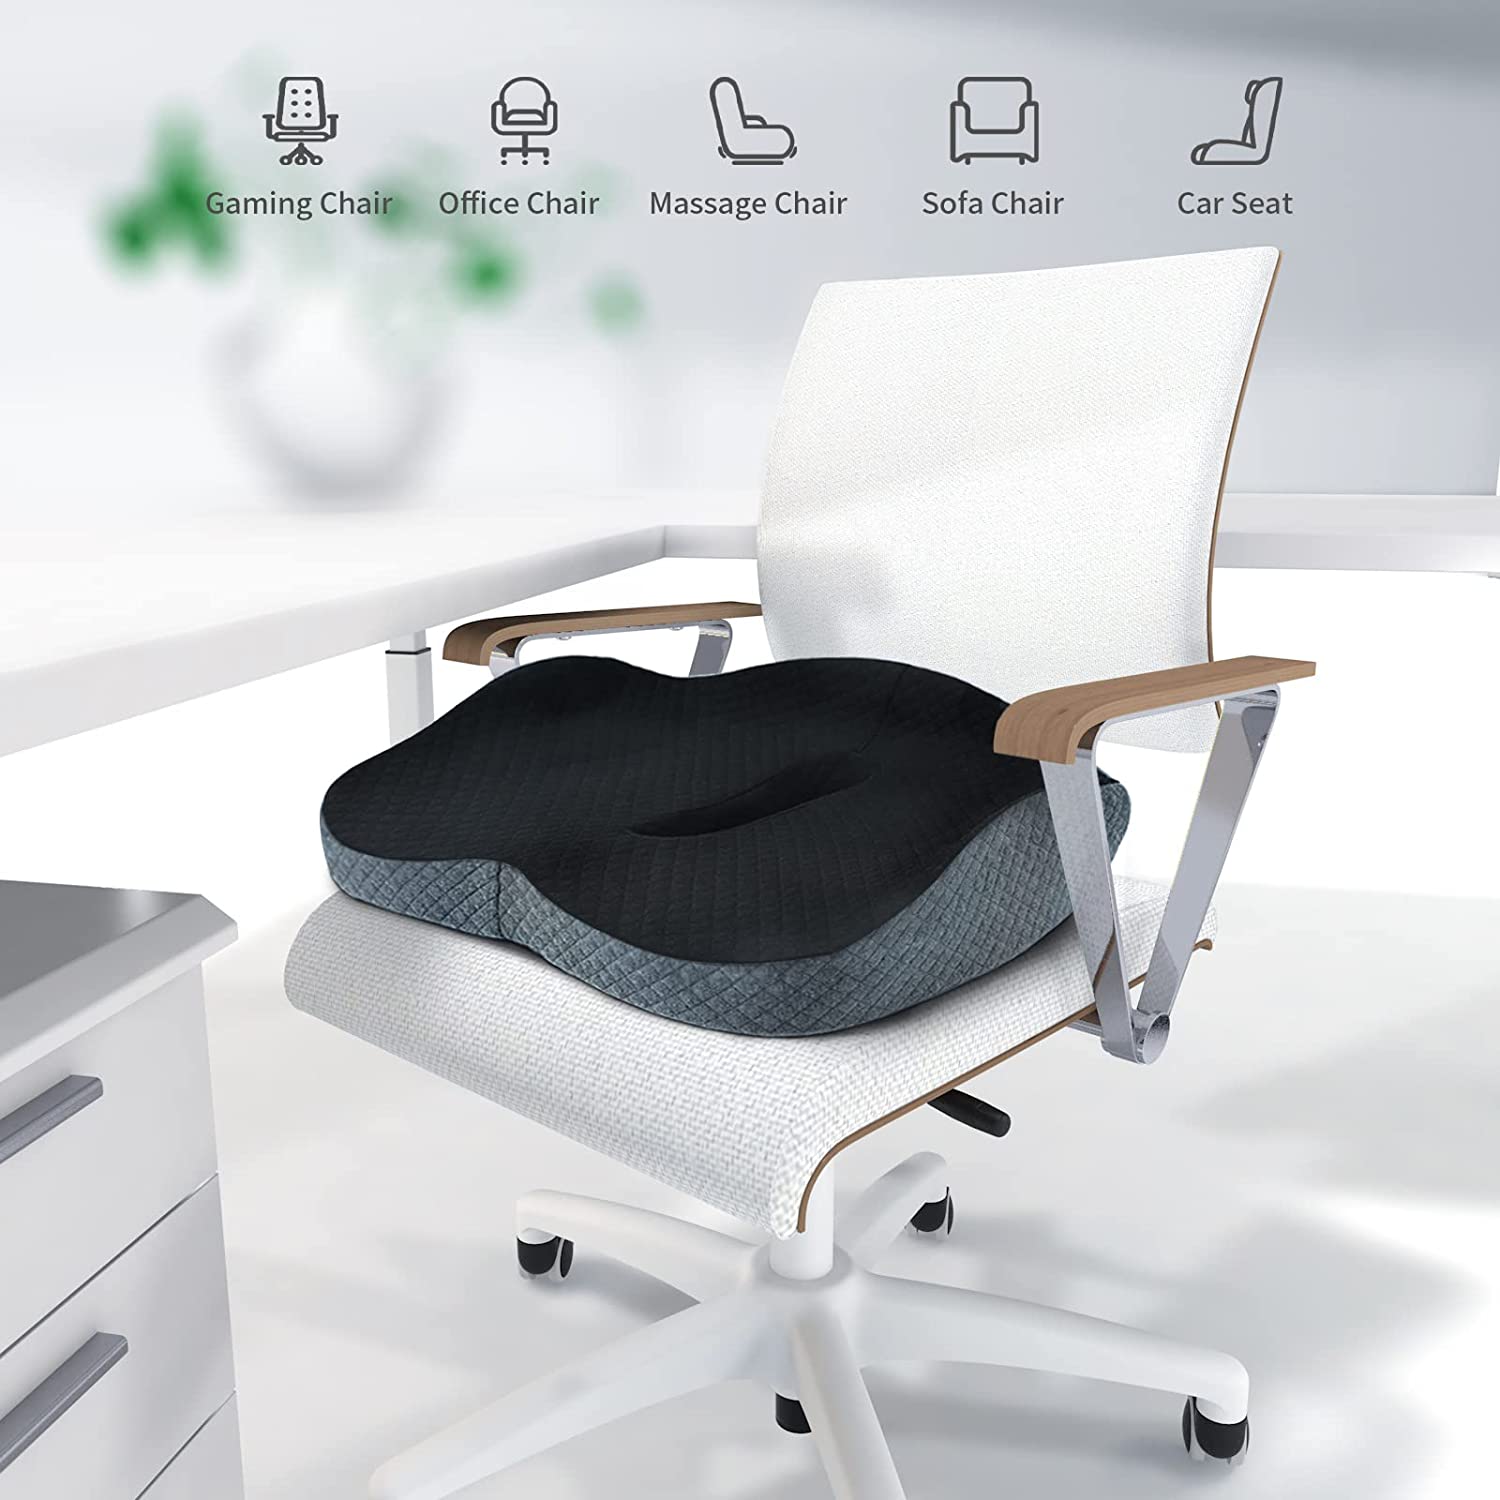 Ergonomic Seat Cushion,Office Chair Cushions, Car Seat Cushion